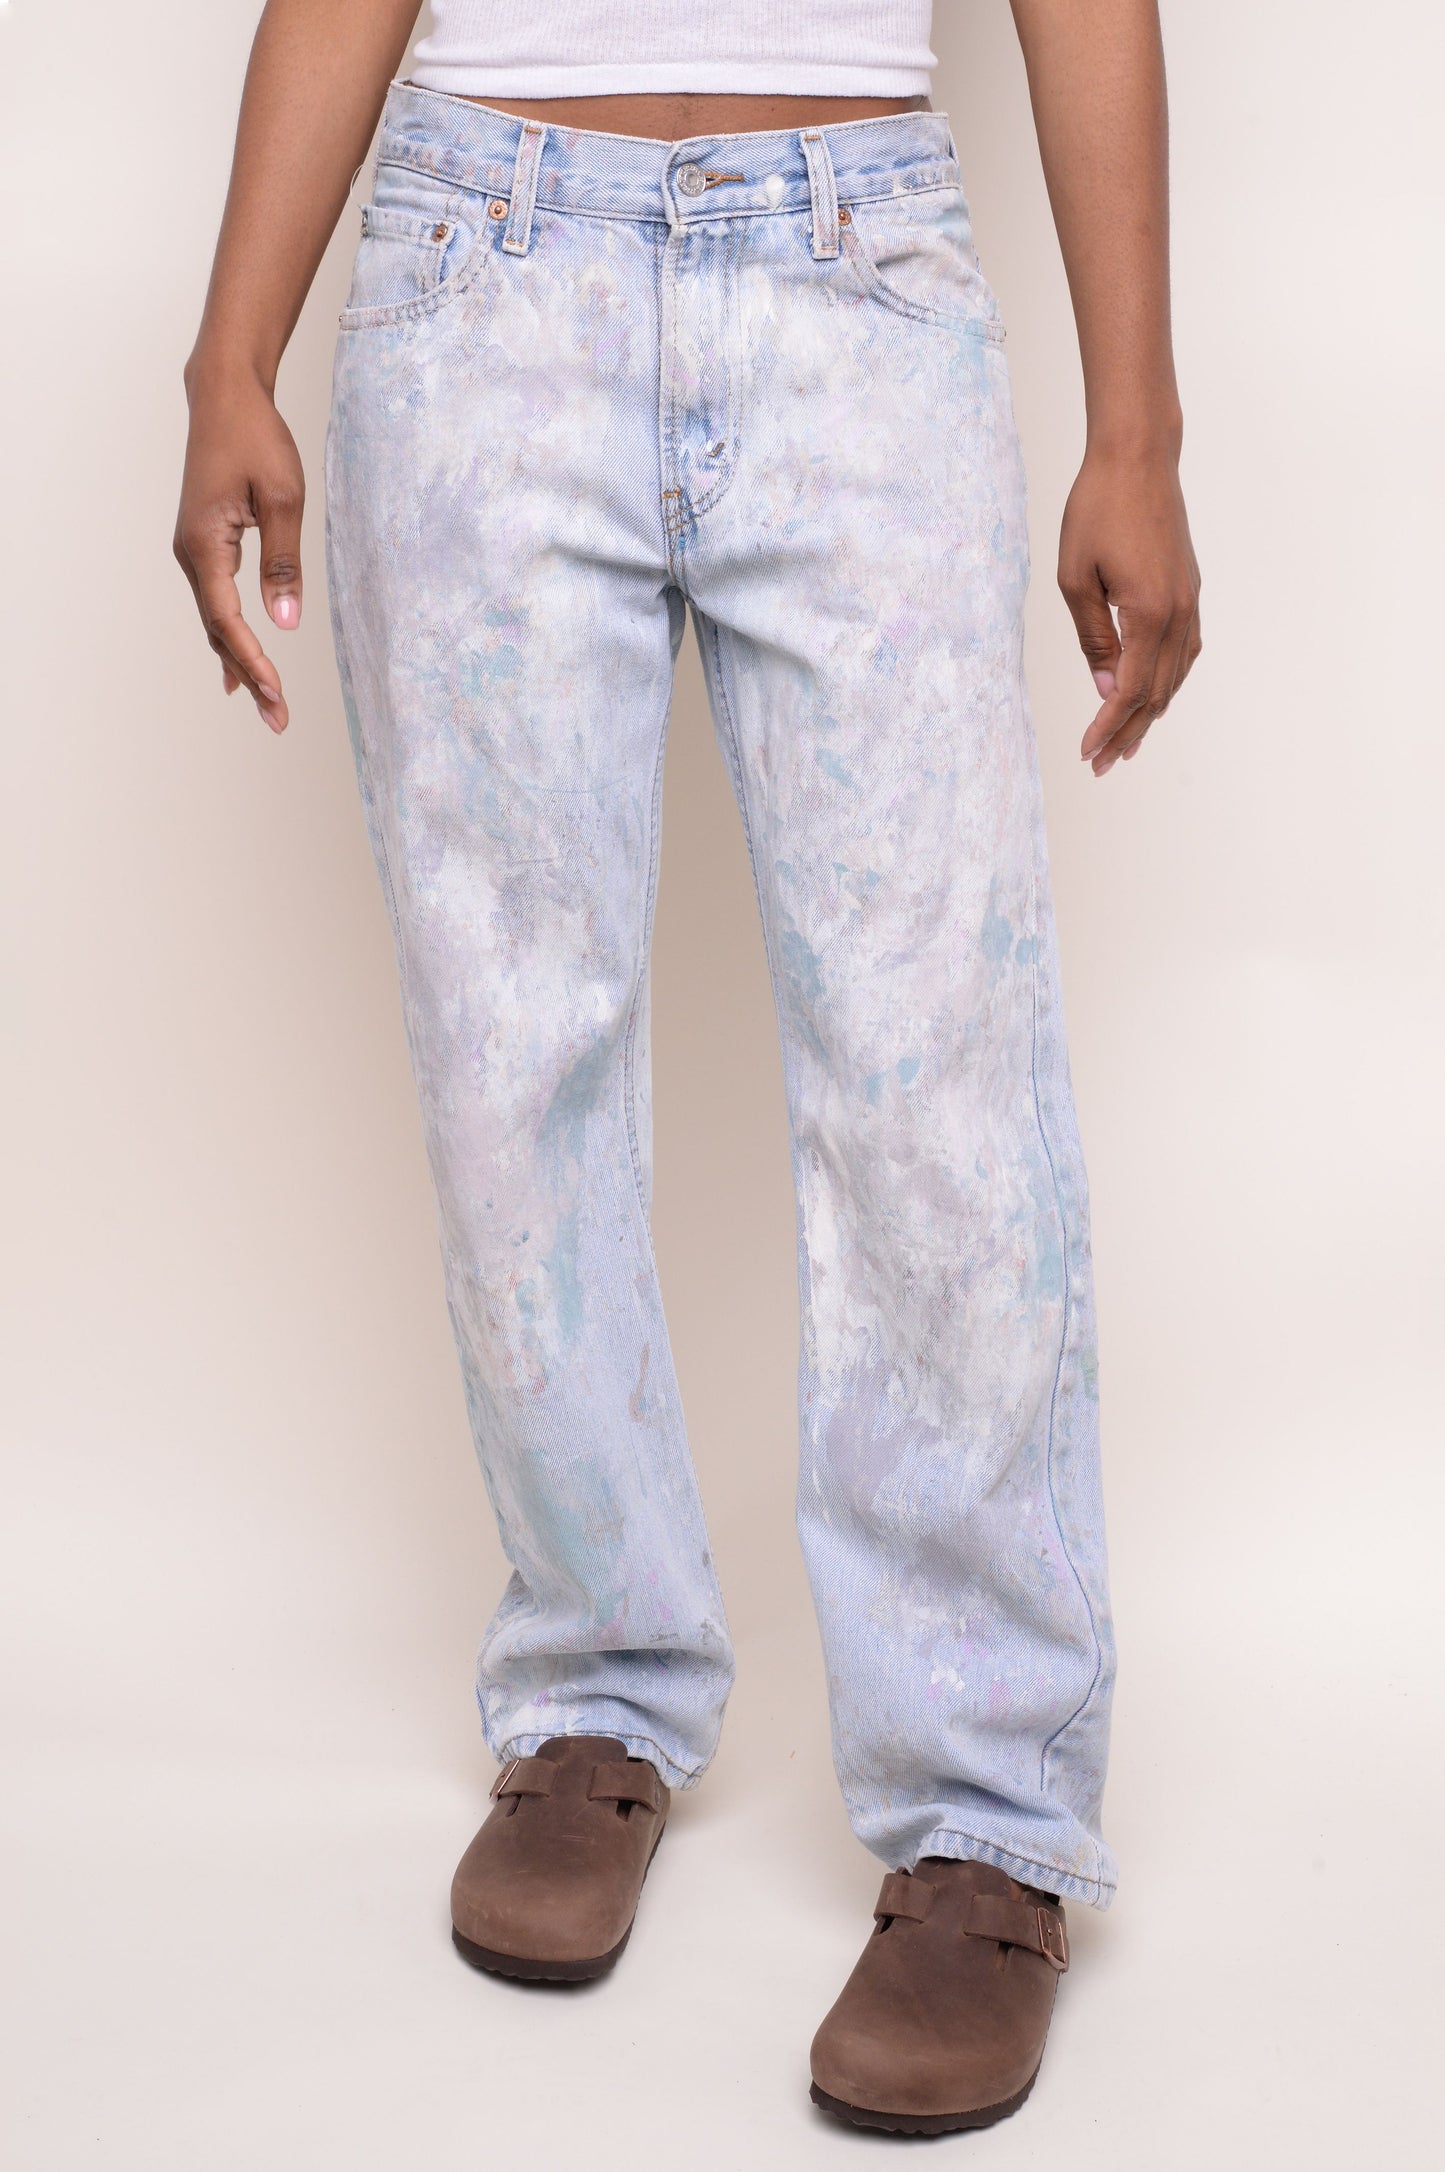 Levi's Straight 505 Painter's Jeans 30W x 30L